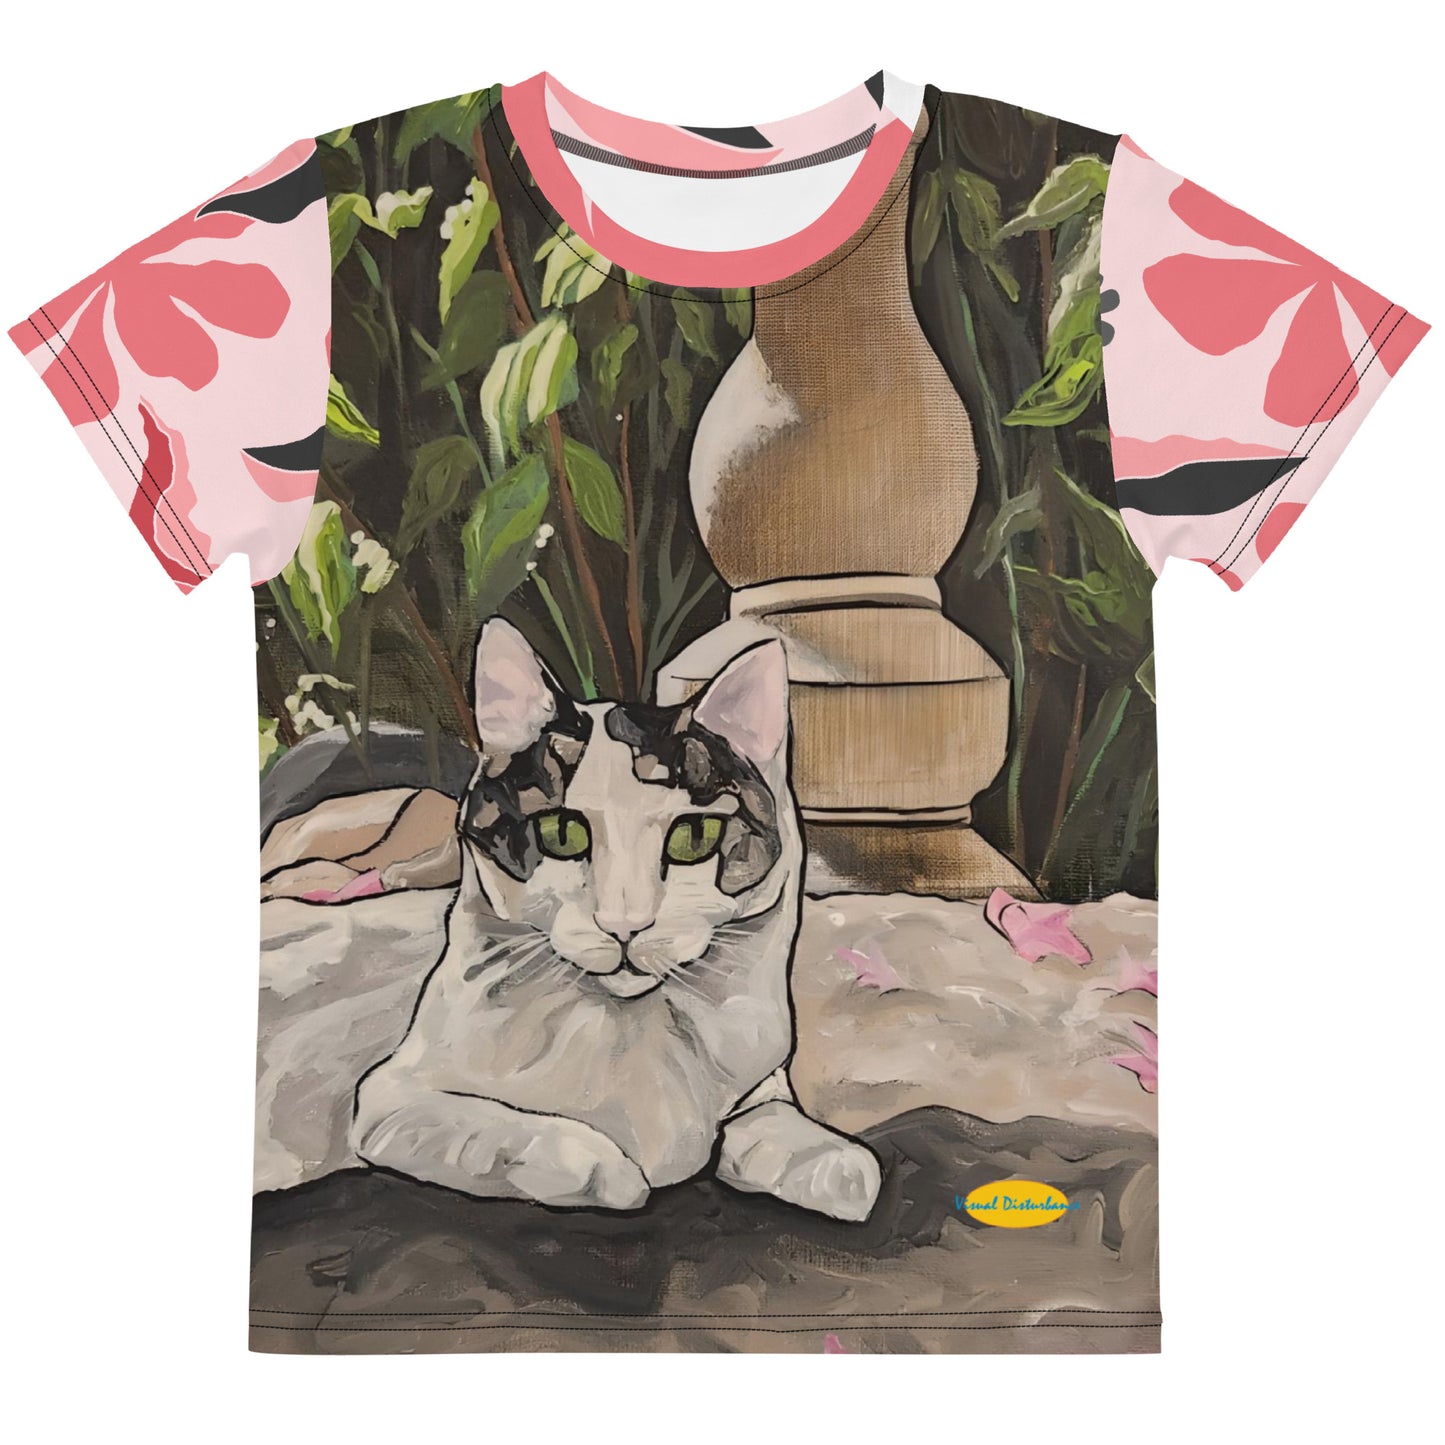 Sweet Pea in the Garden (Flowers) Kids crew neck t-shirt